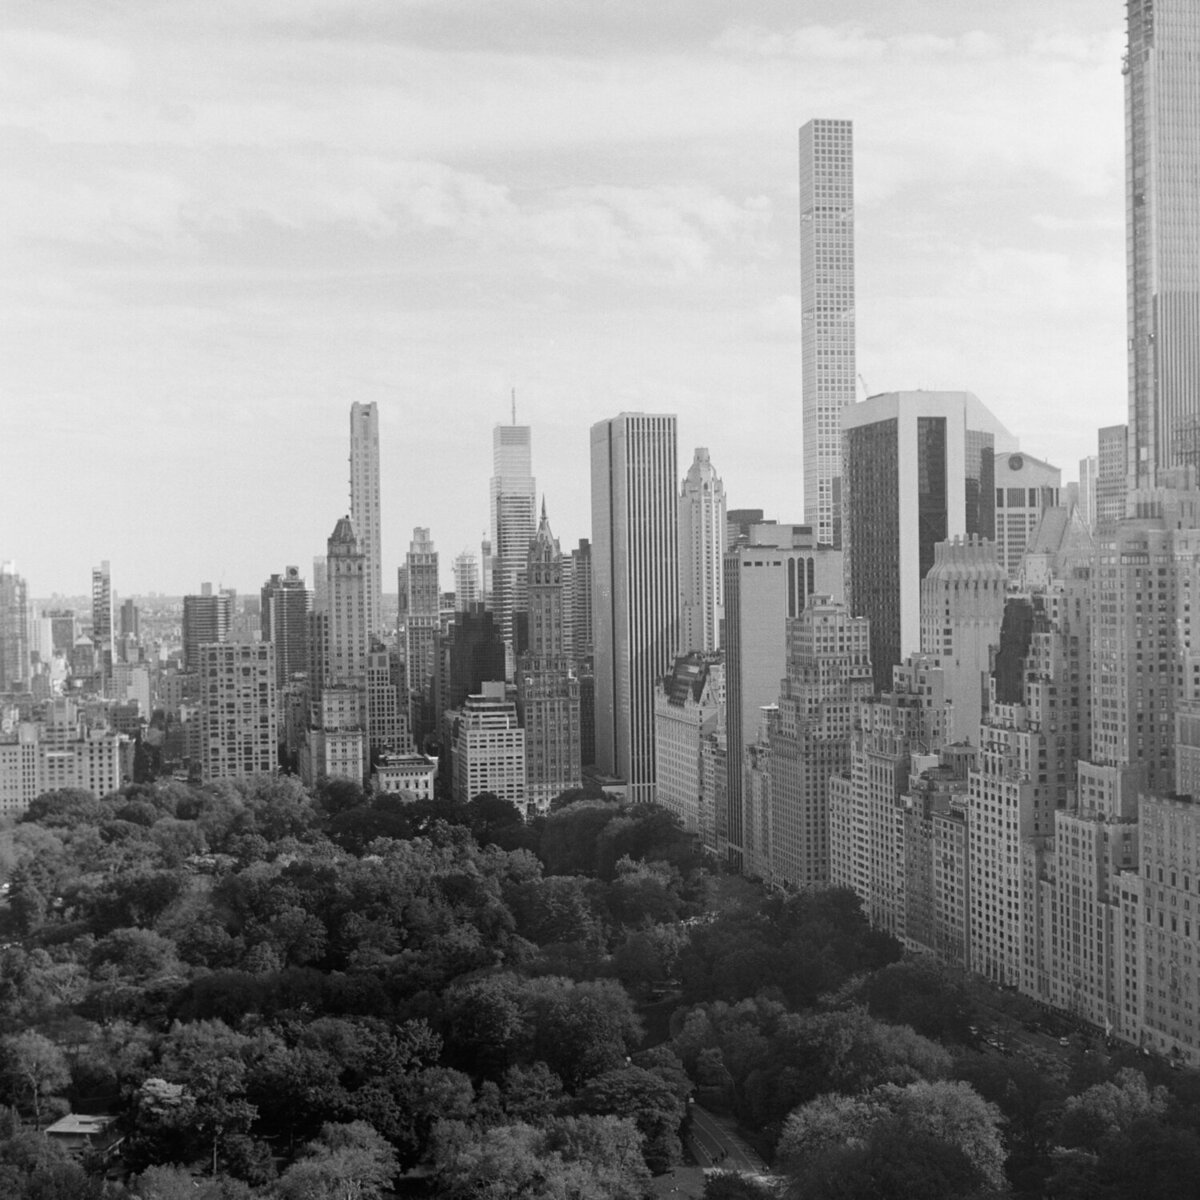 NYC city landscape